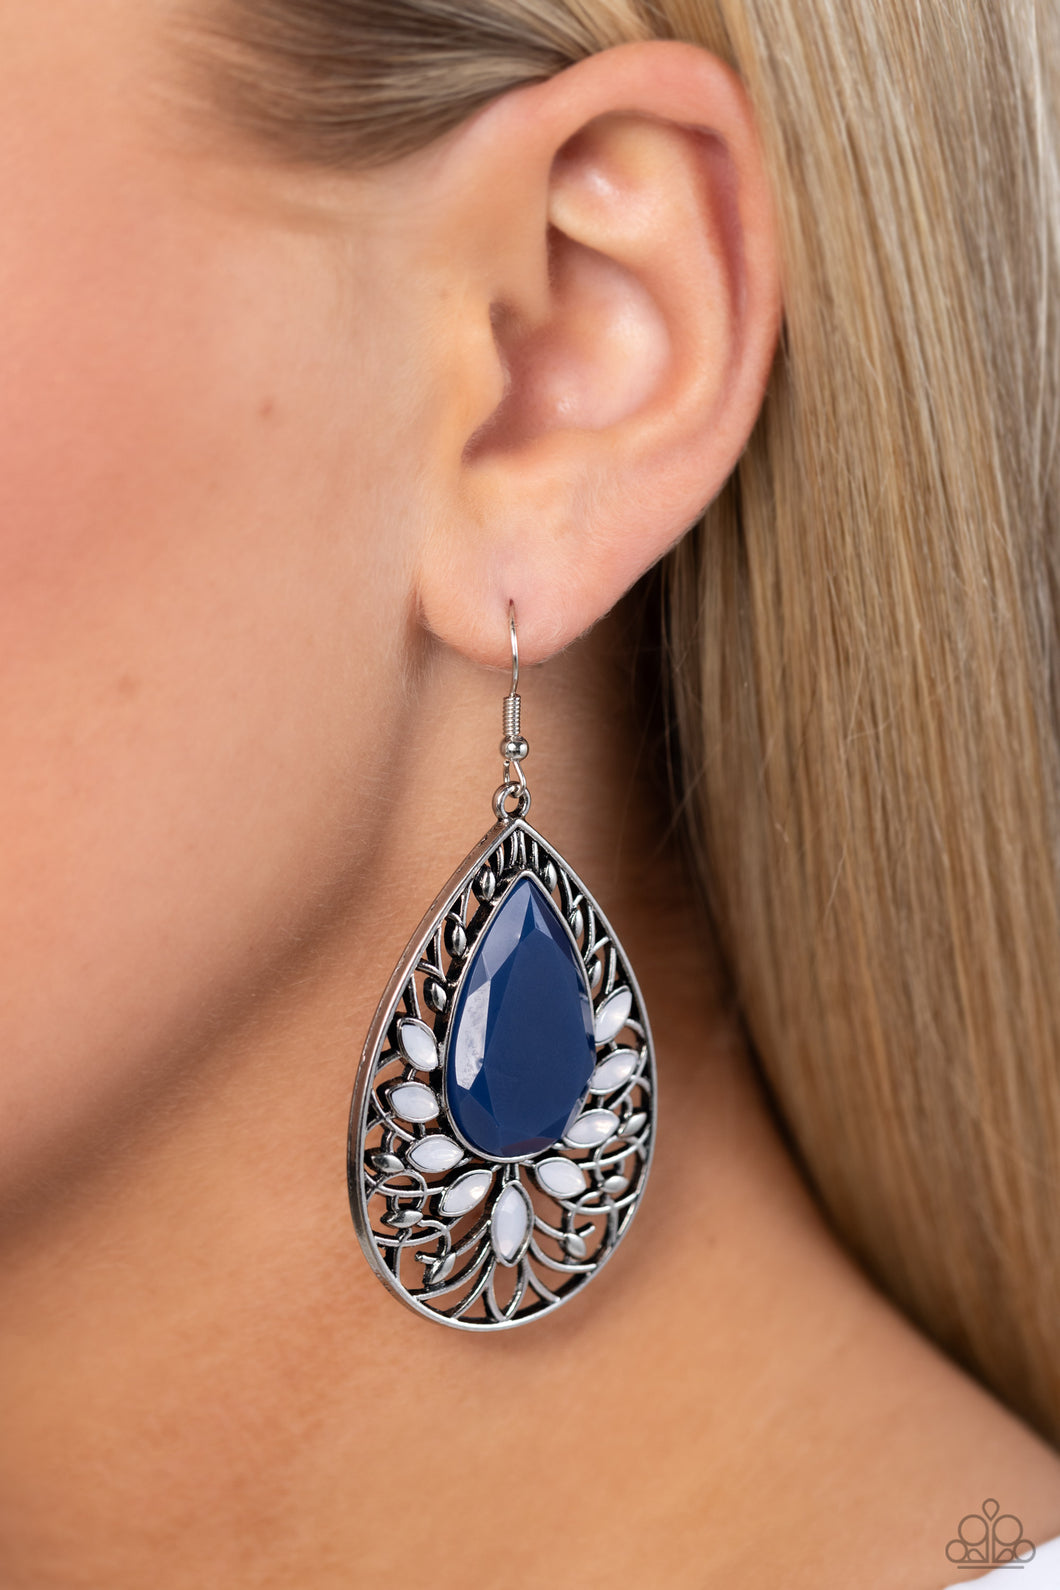 Floral Fairytale Blue Earrings - Jewelry by Bretta